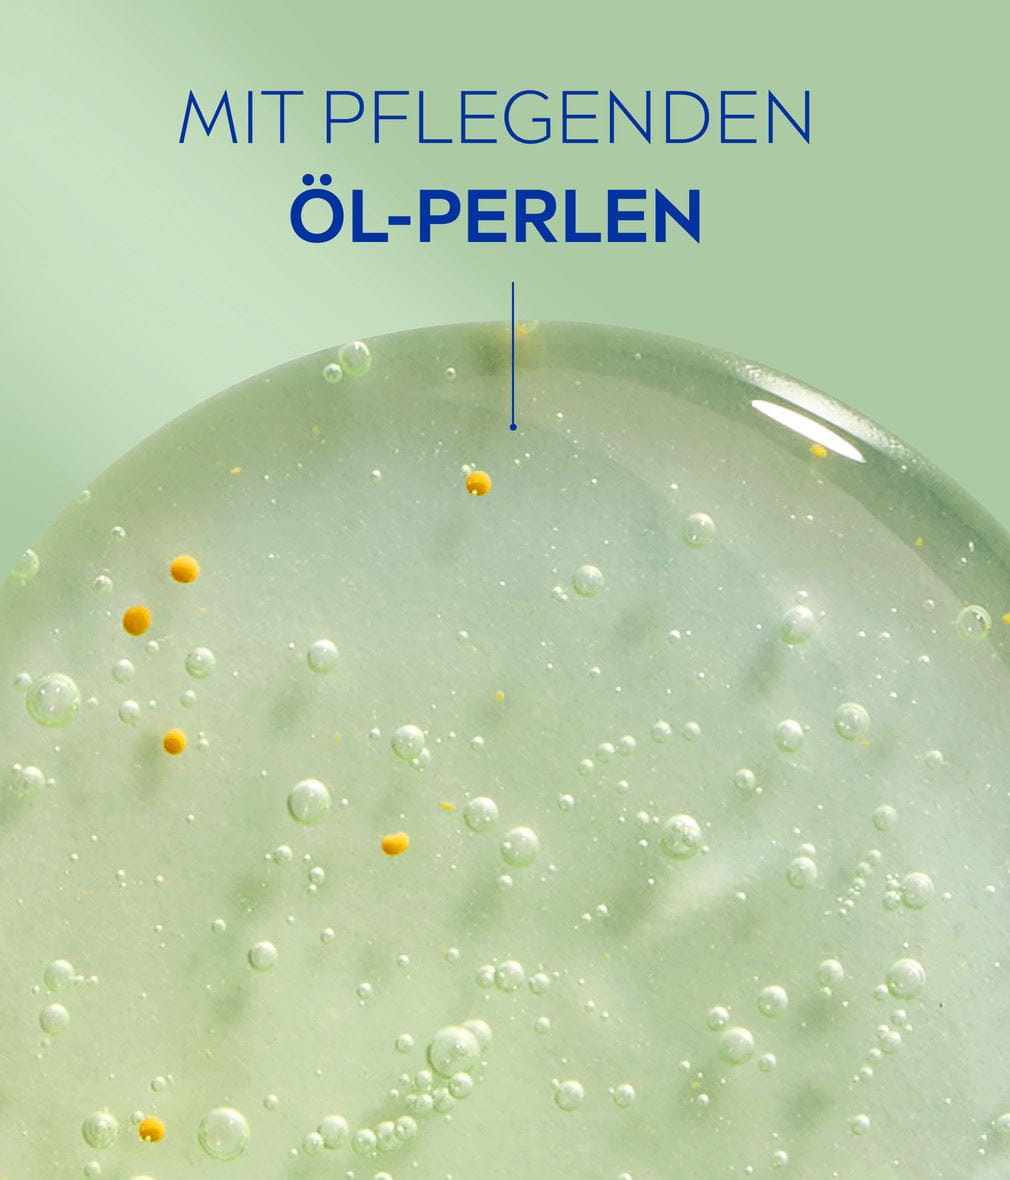 NIVEA Duschgel Lemongrass & Oil mit Vitaminen + Detail mit Inhaltsstoffen und Öl-Perlen